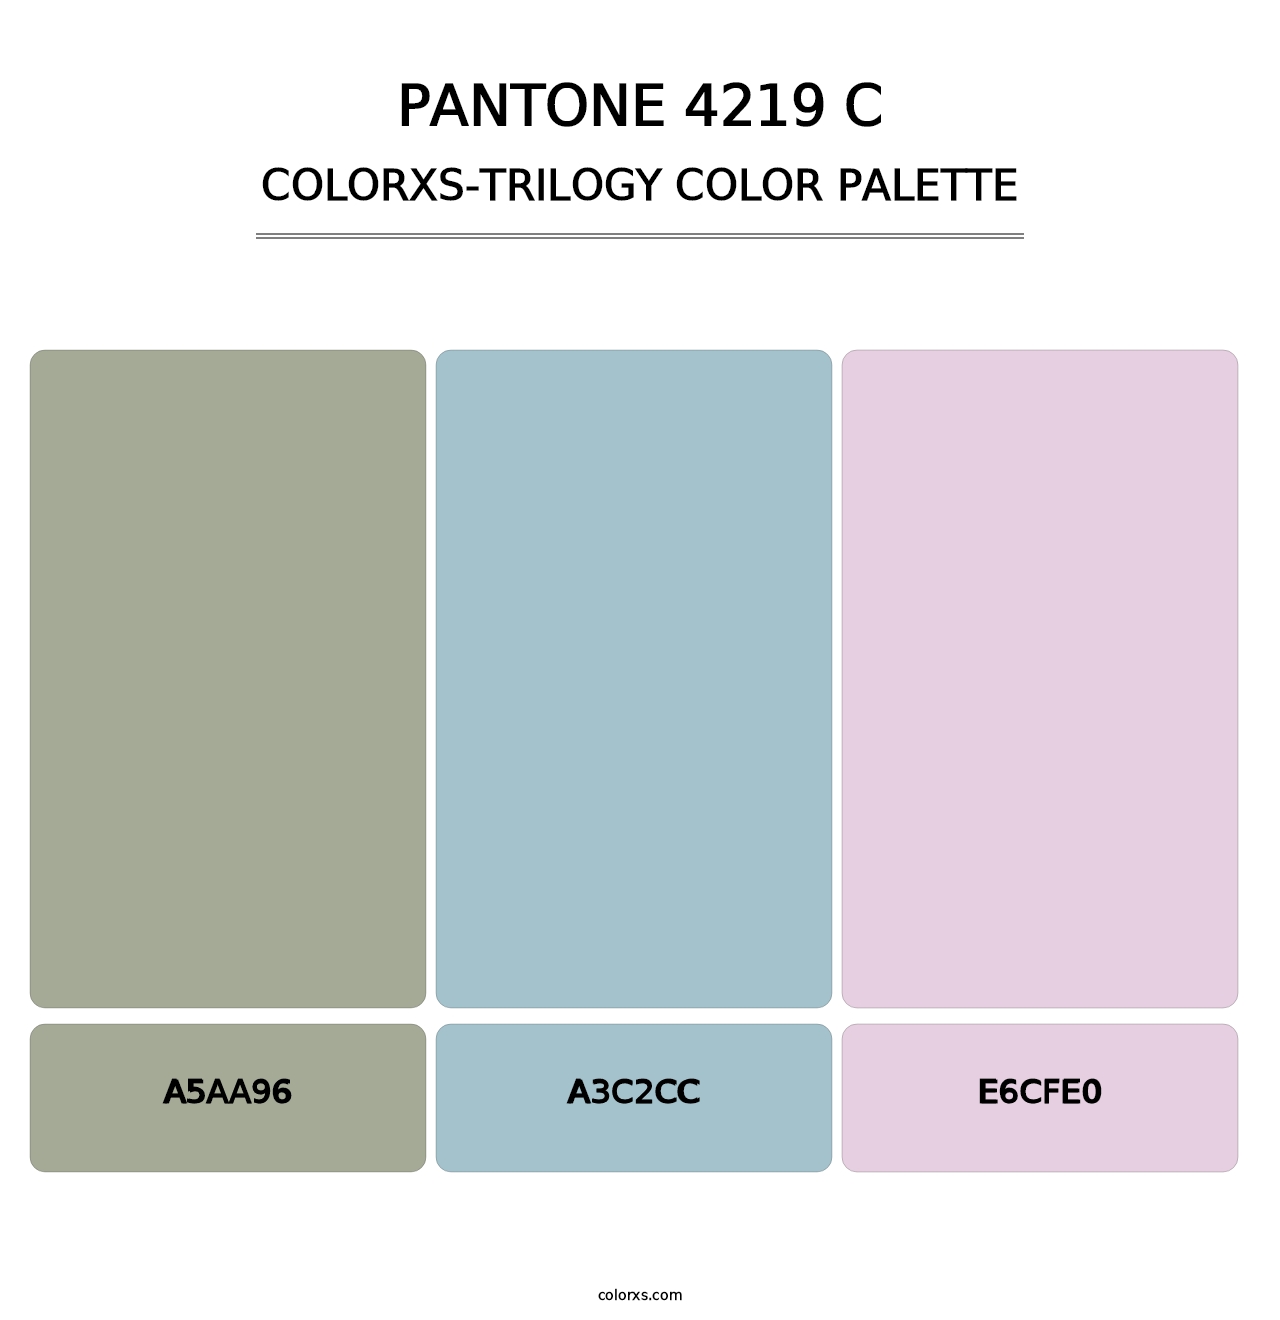 PANTONE 4219 C - Colorxs Trilogy Palette